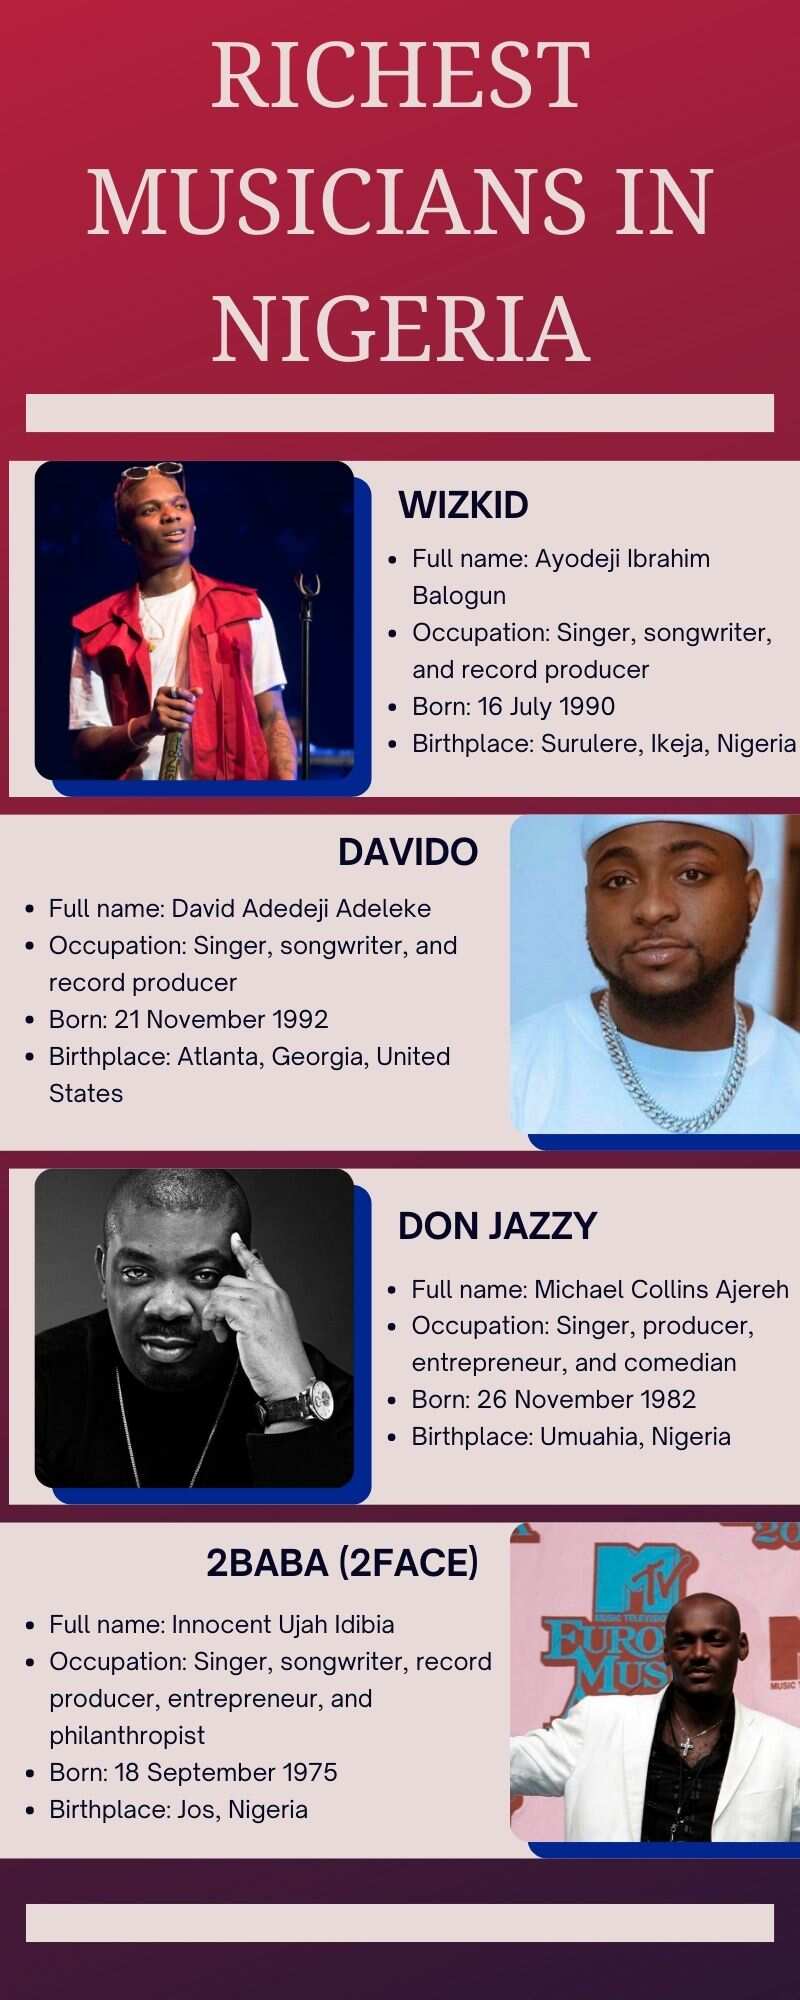 Richest musicians in Nigeria